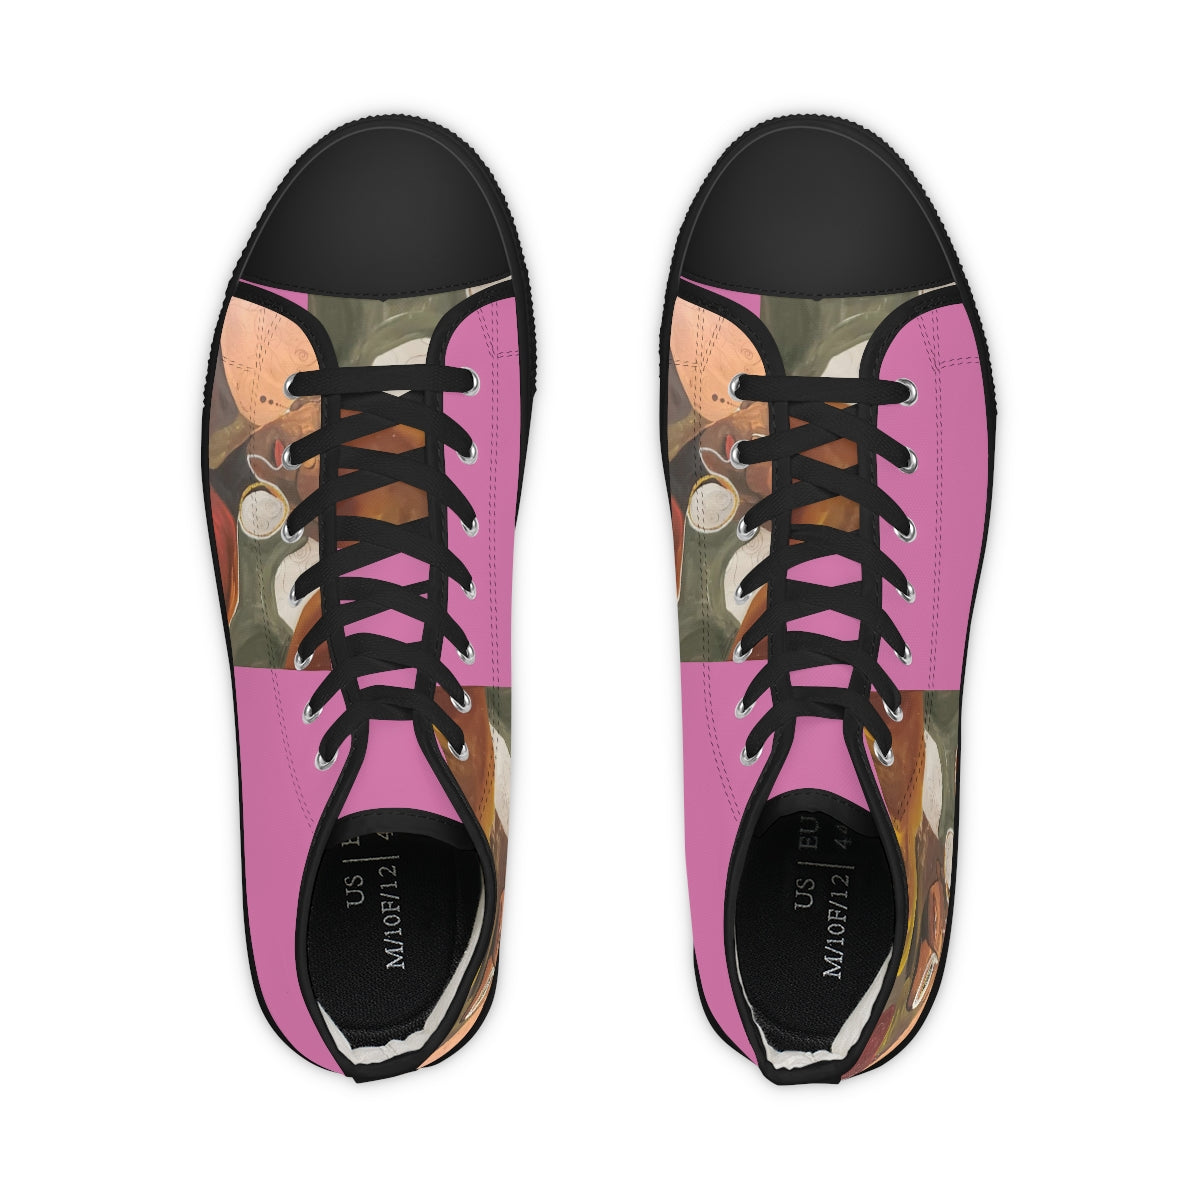 Men's Pink High Top Sneakers